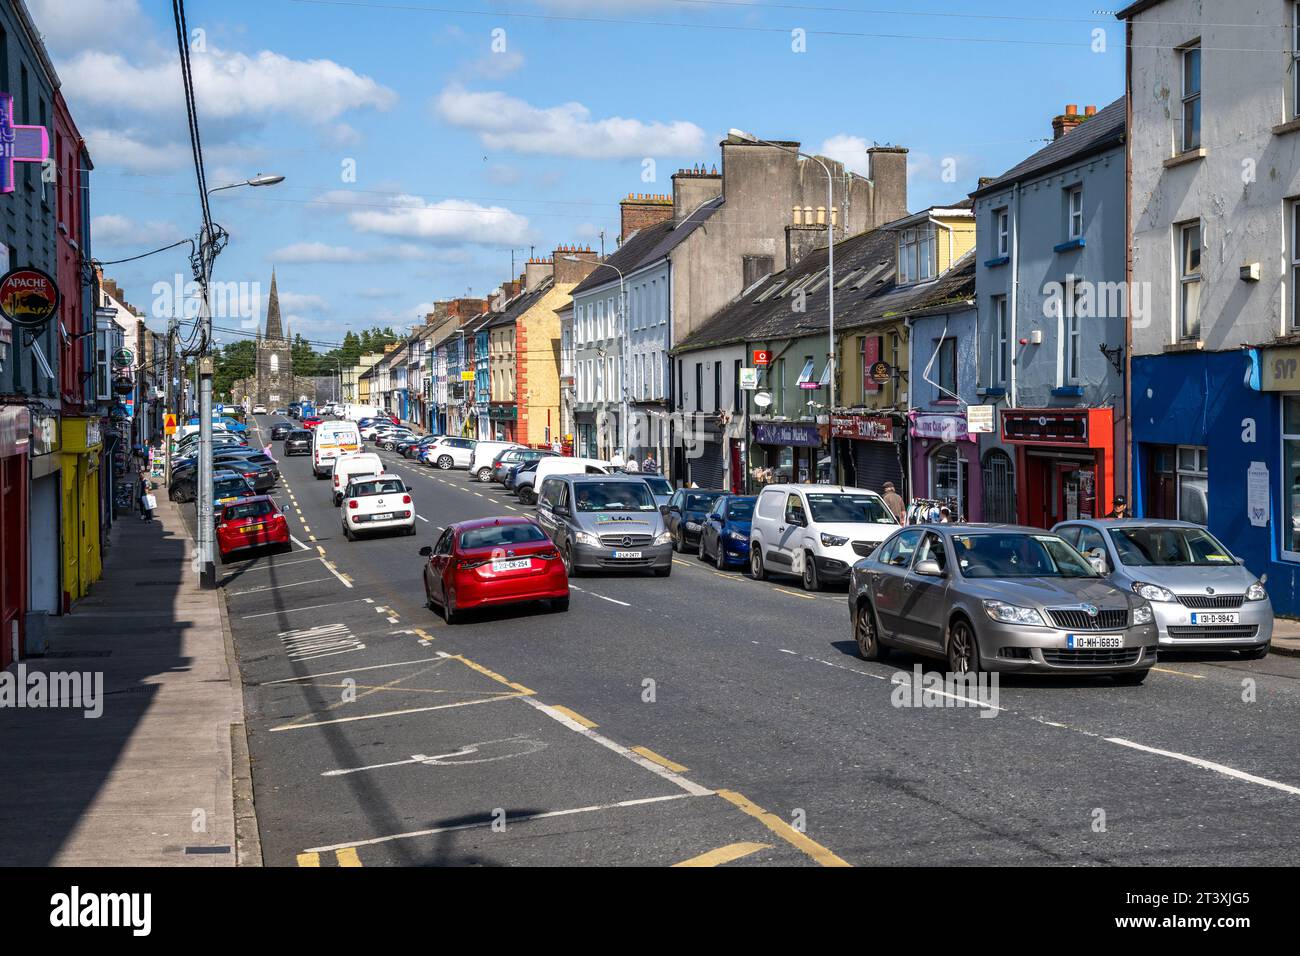 Market Street in Cootehill, Co. Cavan, Ireland. Stock Photo